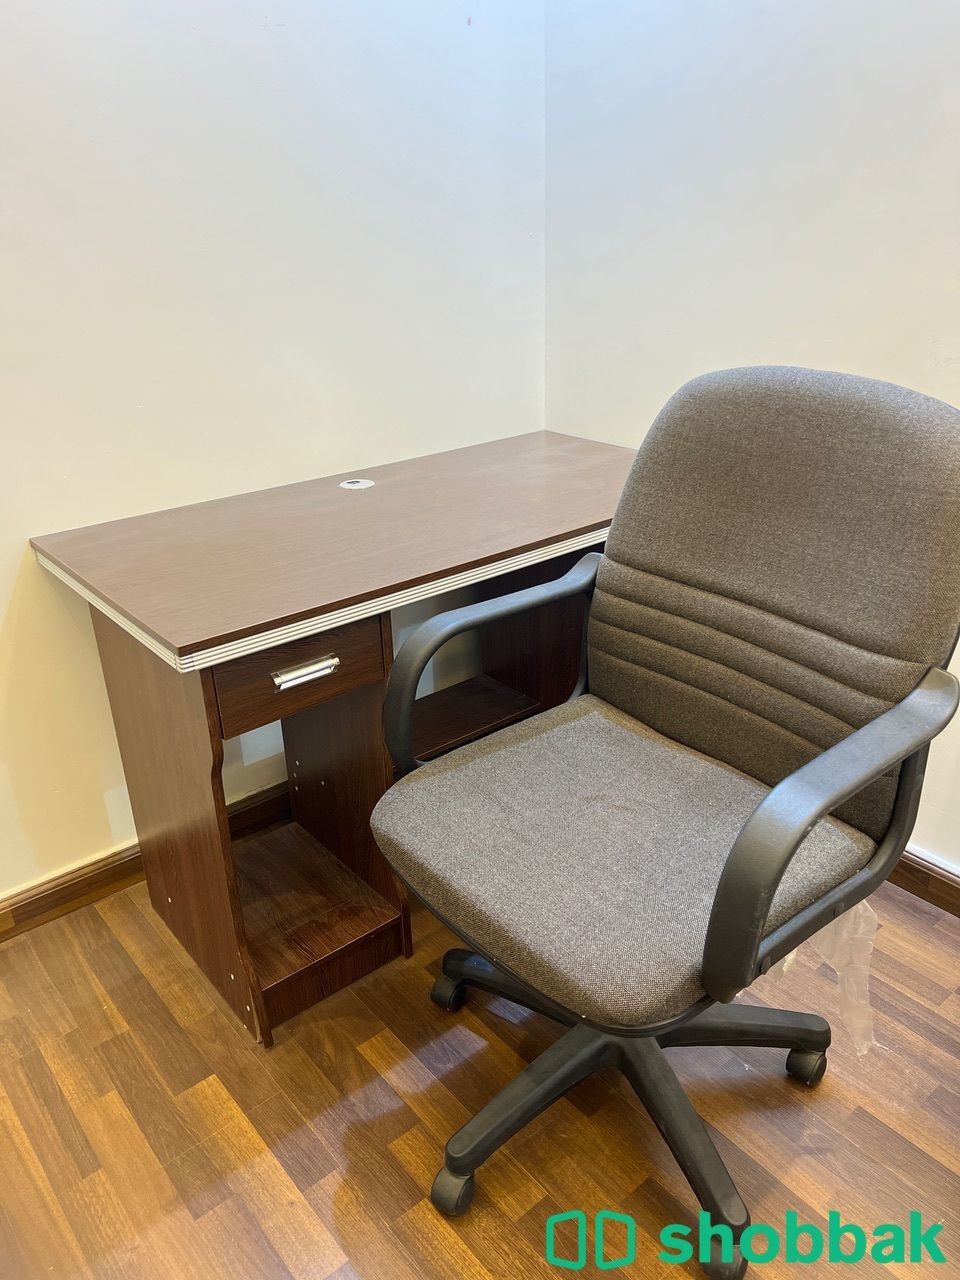 مكتب و كرسي للبيع Shobbak Saudi Arabia